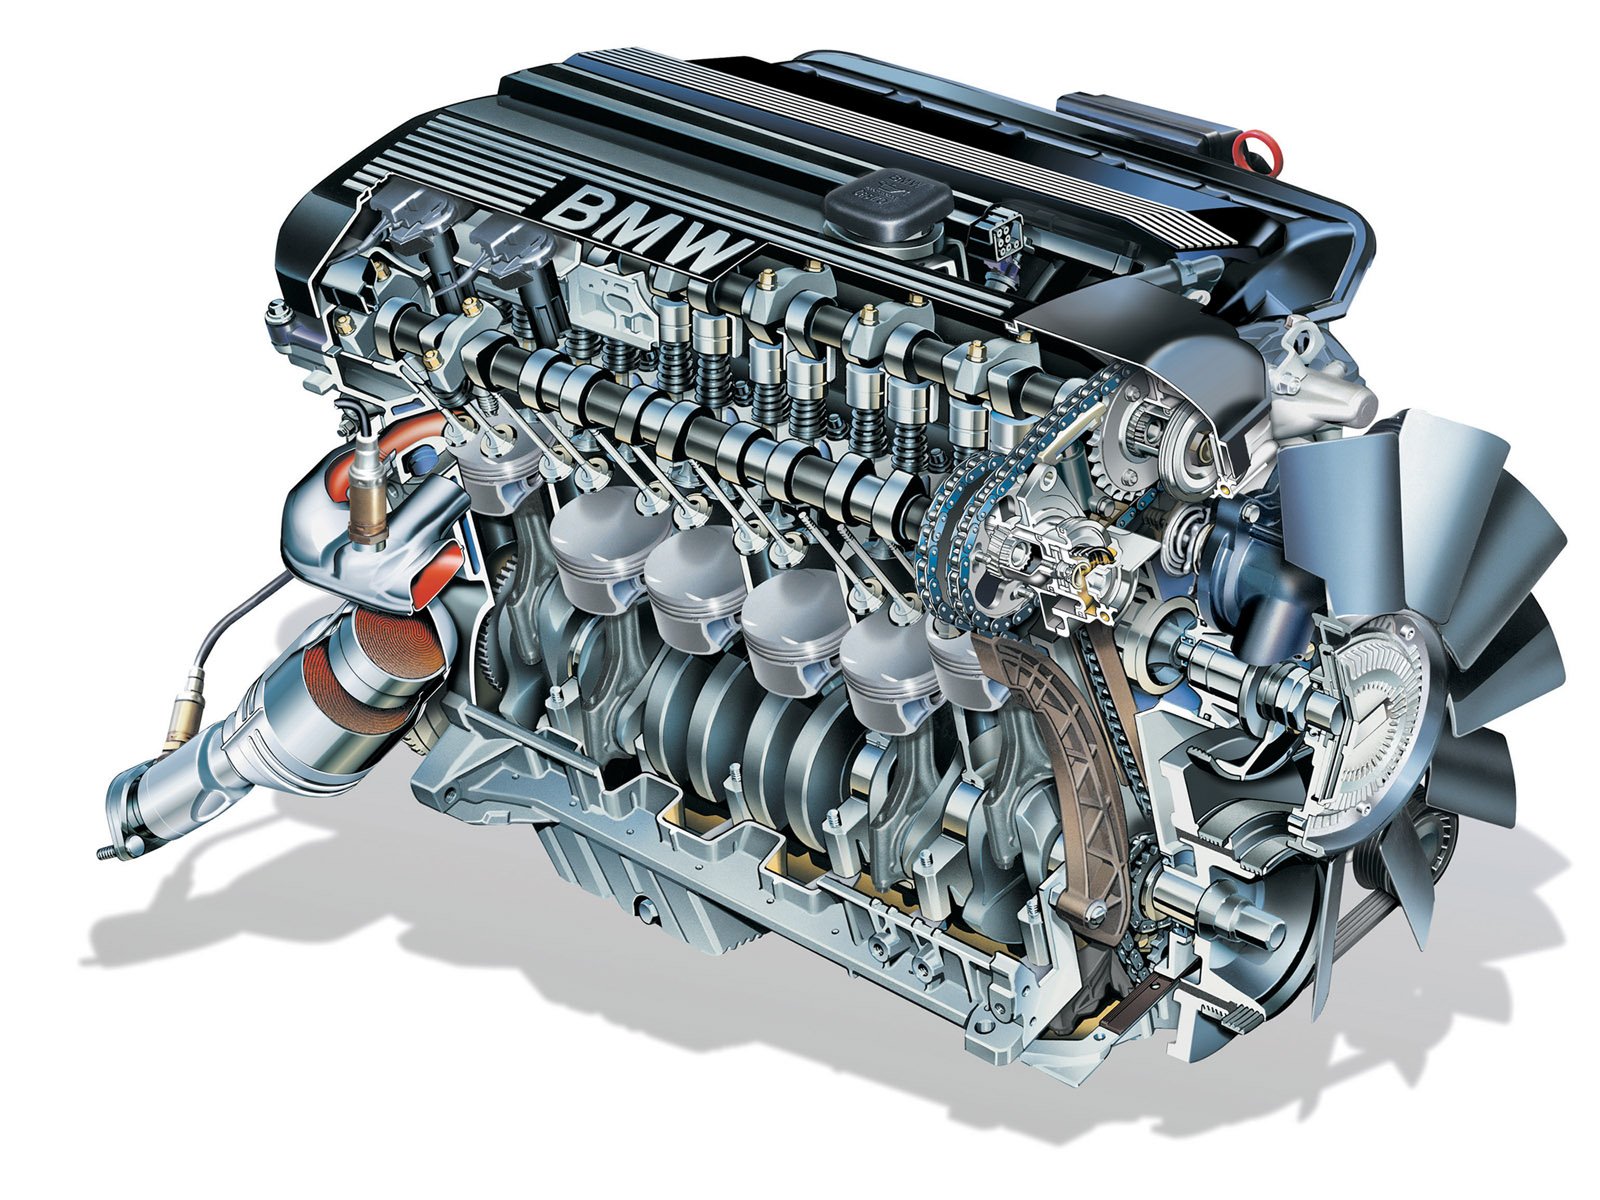 Двигатель на автомобиле является. Мотор БМВ м50. Рядный 6 цилиндровый двигатель BMW. БМВ м120. Мотор БМВ 4.4.